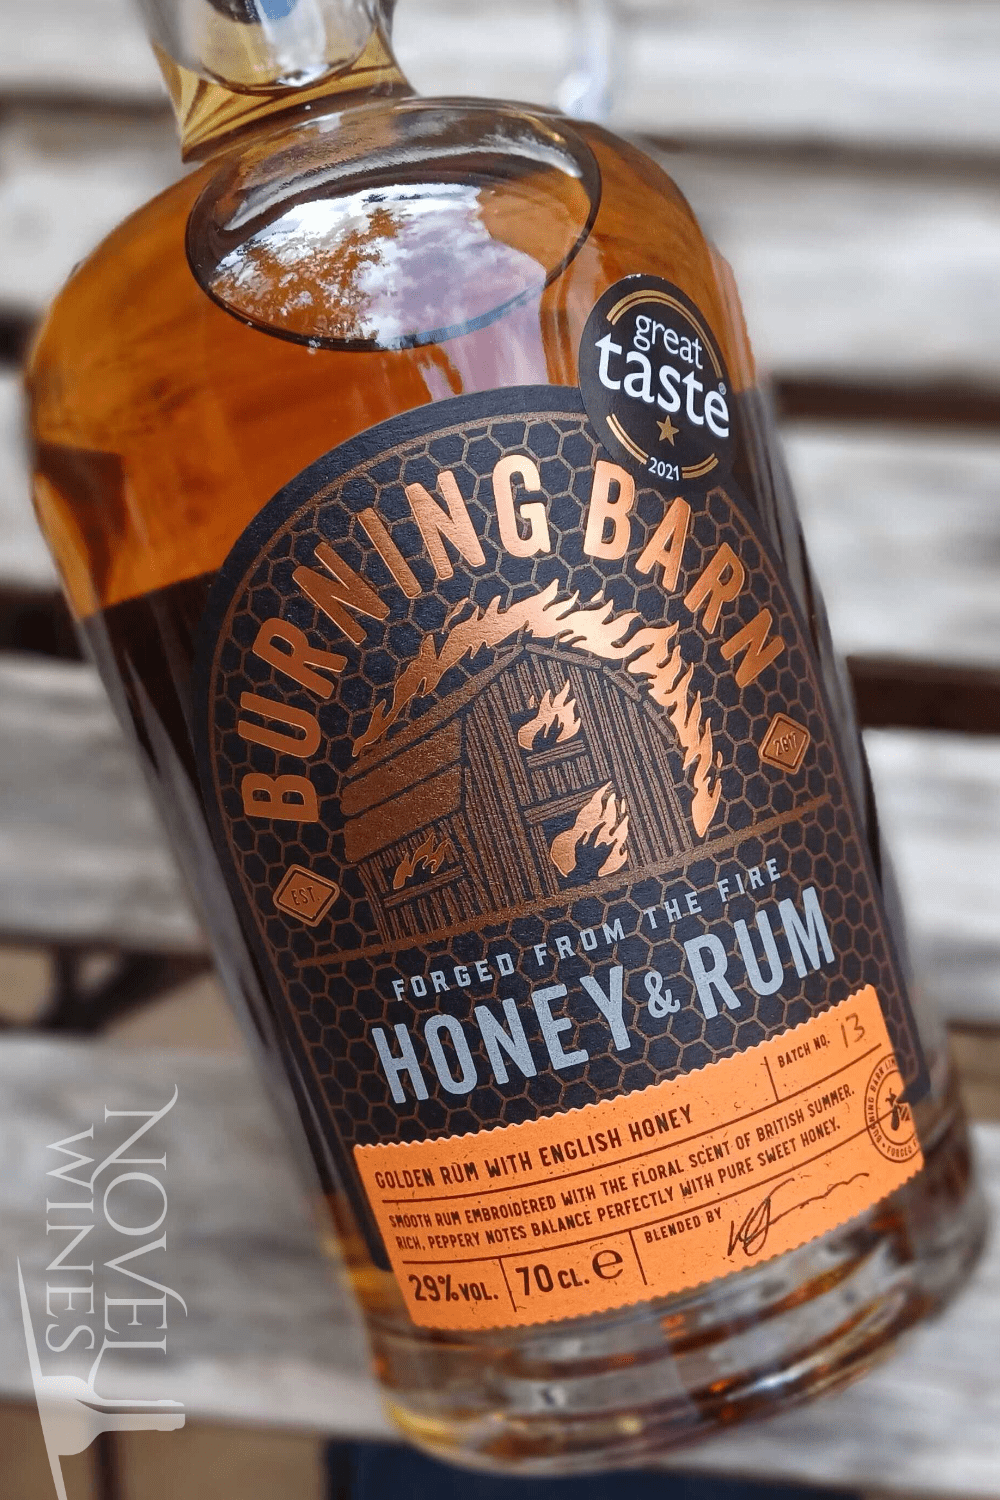 Burning Barn Rum Burning Barn Honey & Rum Liqueur 29.0% abv, England